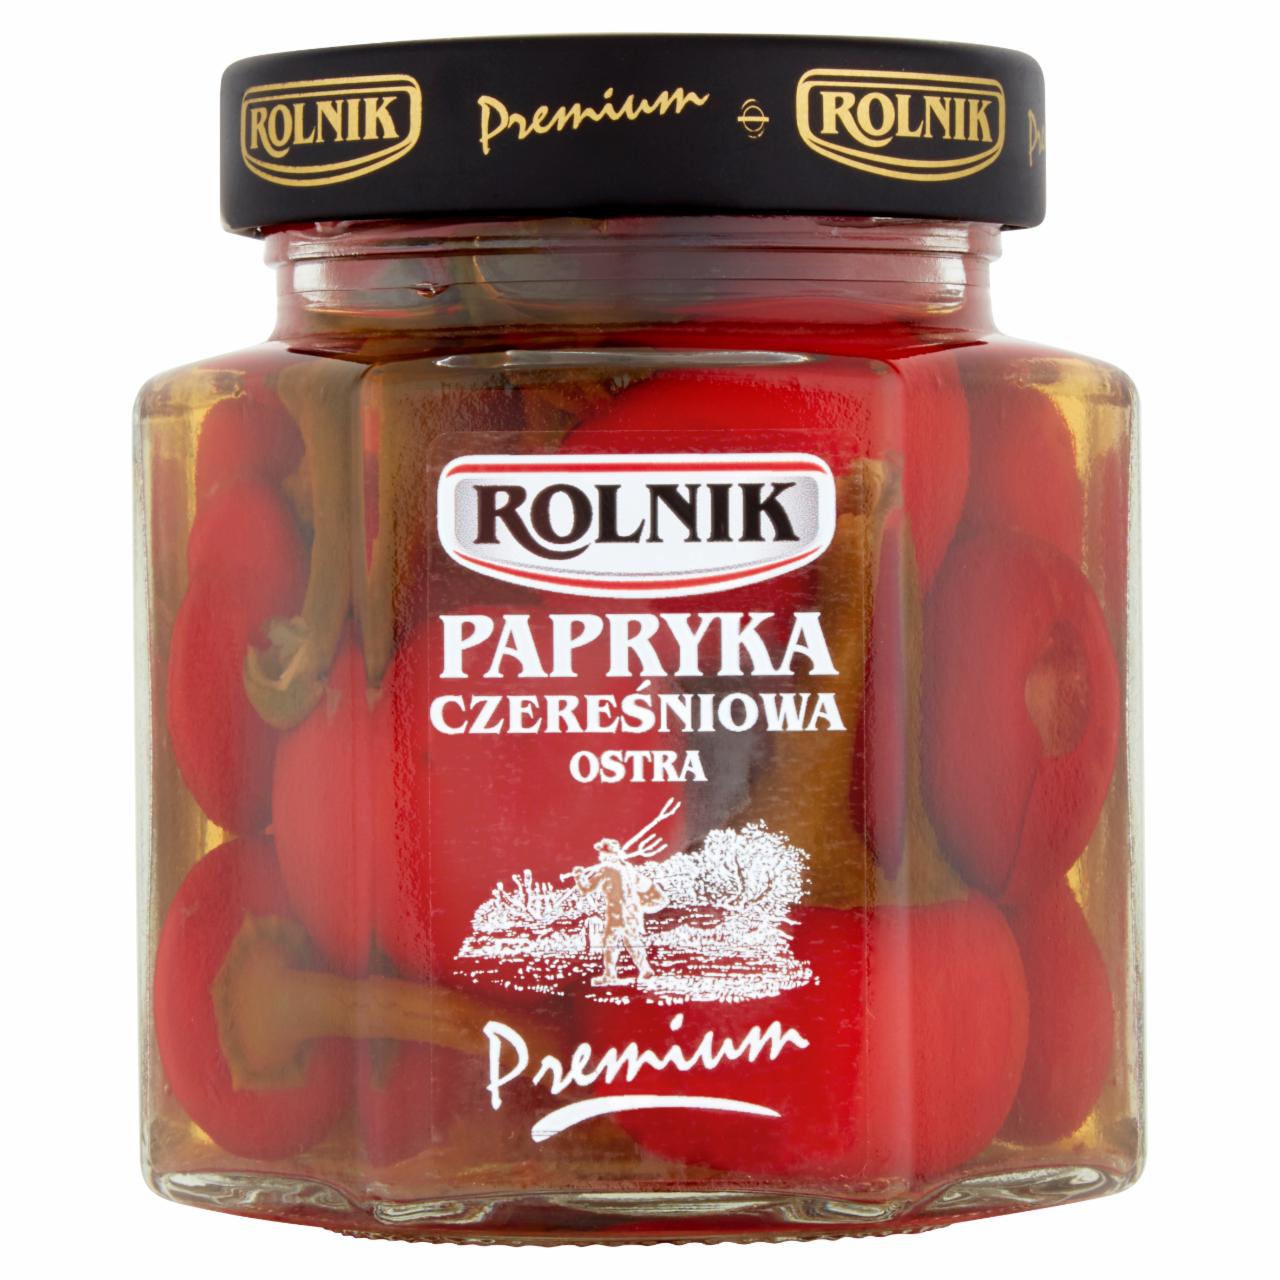 Zdjęcia - Rolnik Premium Papryka czereśniowa ostra 300 g